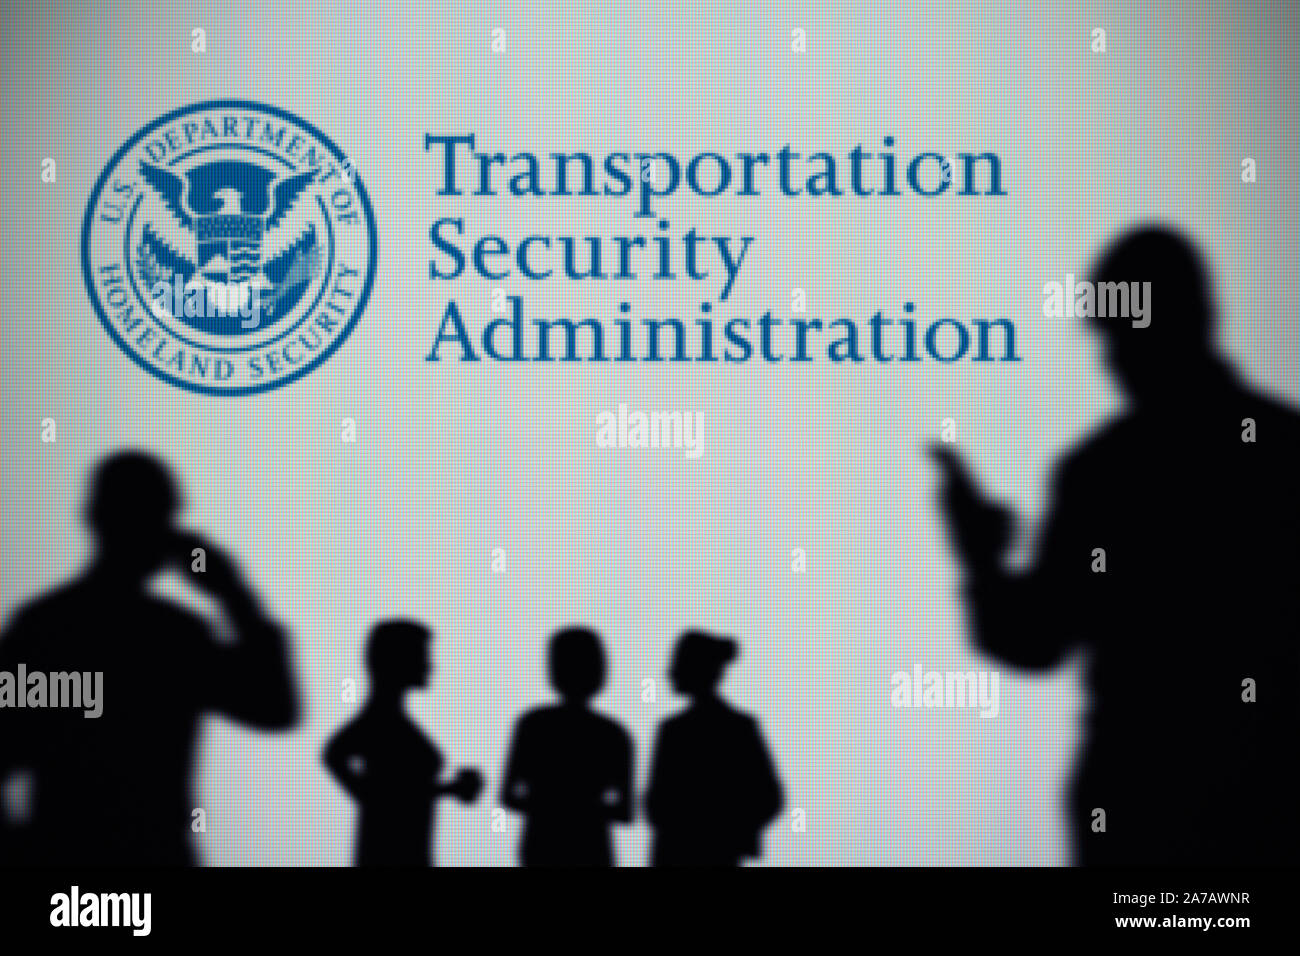 Transportation Security Administration logo è visibile su uno schermo in background mentre si profila una persona utilizza uno smartphone (solo uso editoriale). Foto Stock